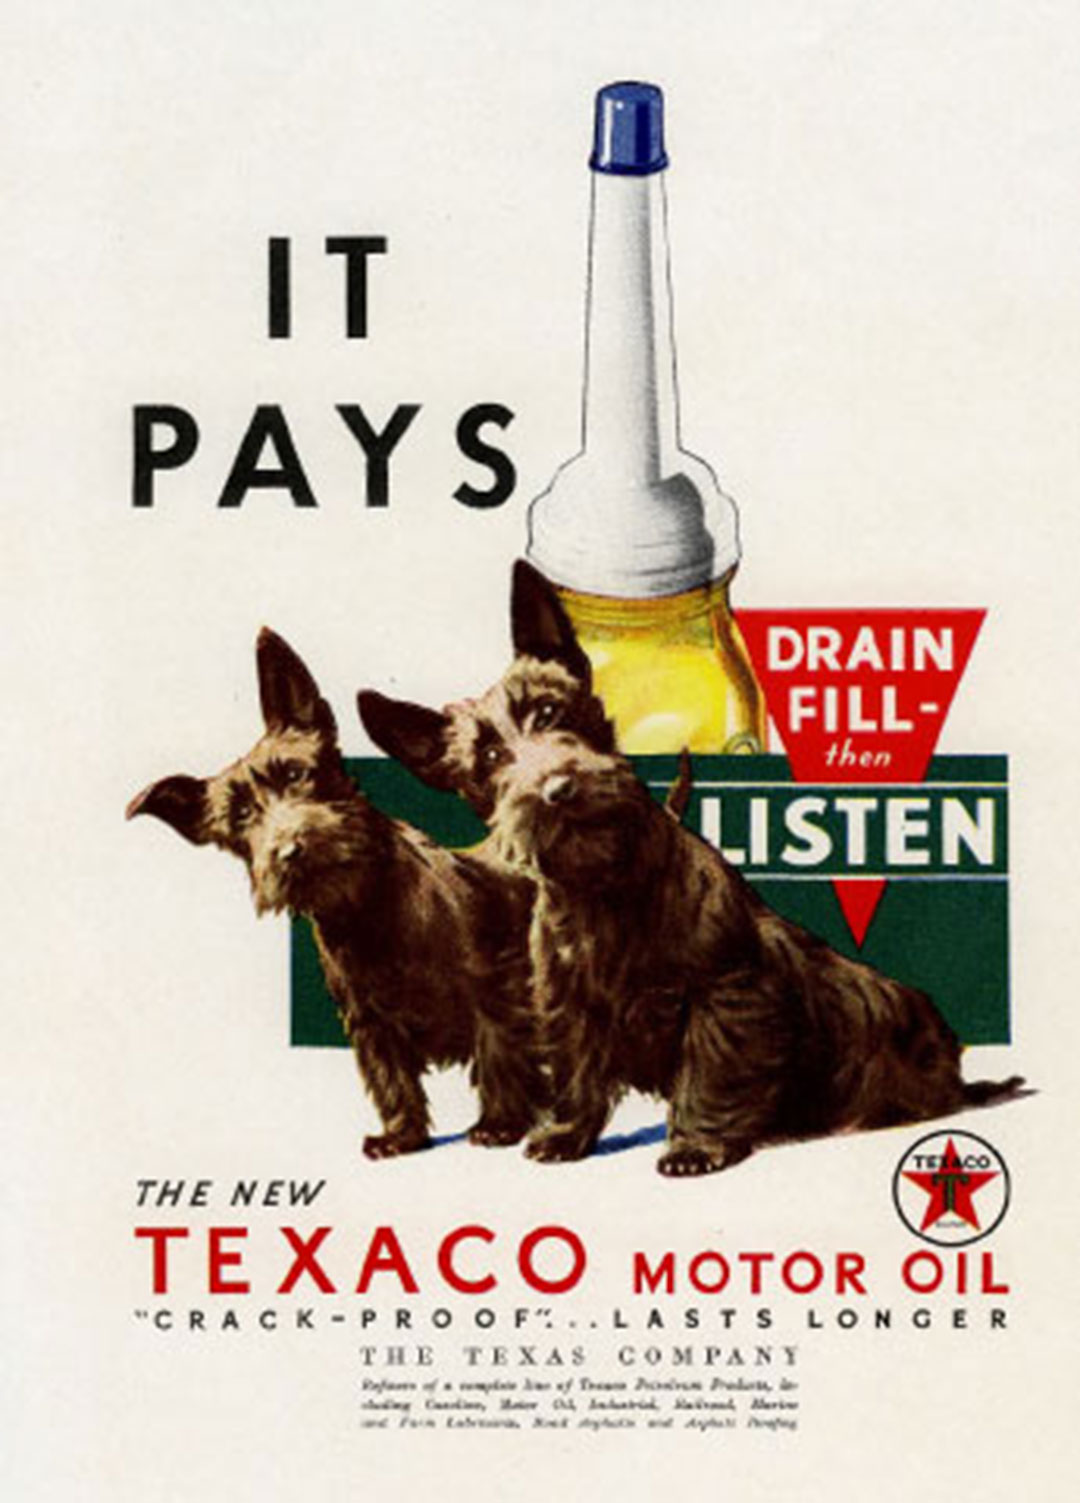 Old Texaco ad